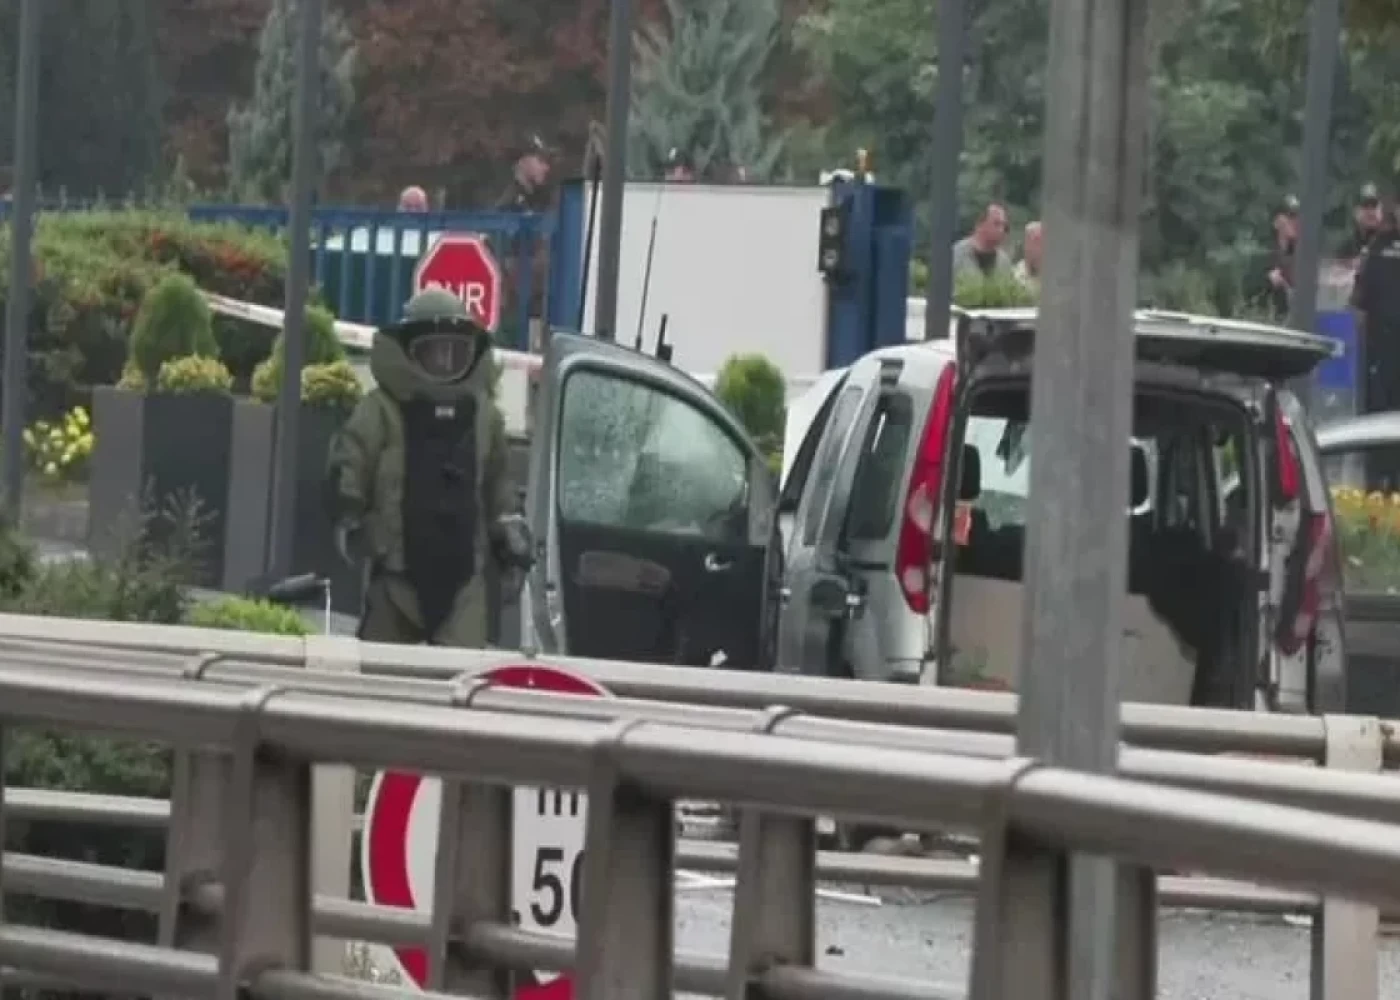 Türkiyədə terrorçularla qarşıdurma anlarının görüntüsü yayıldı - VİDEO